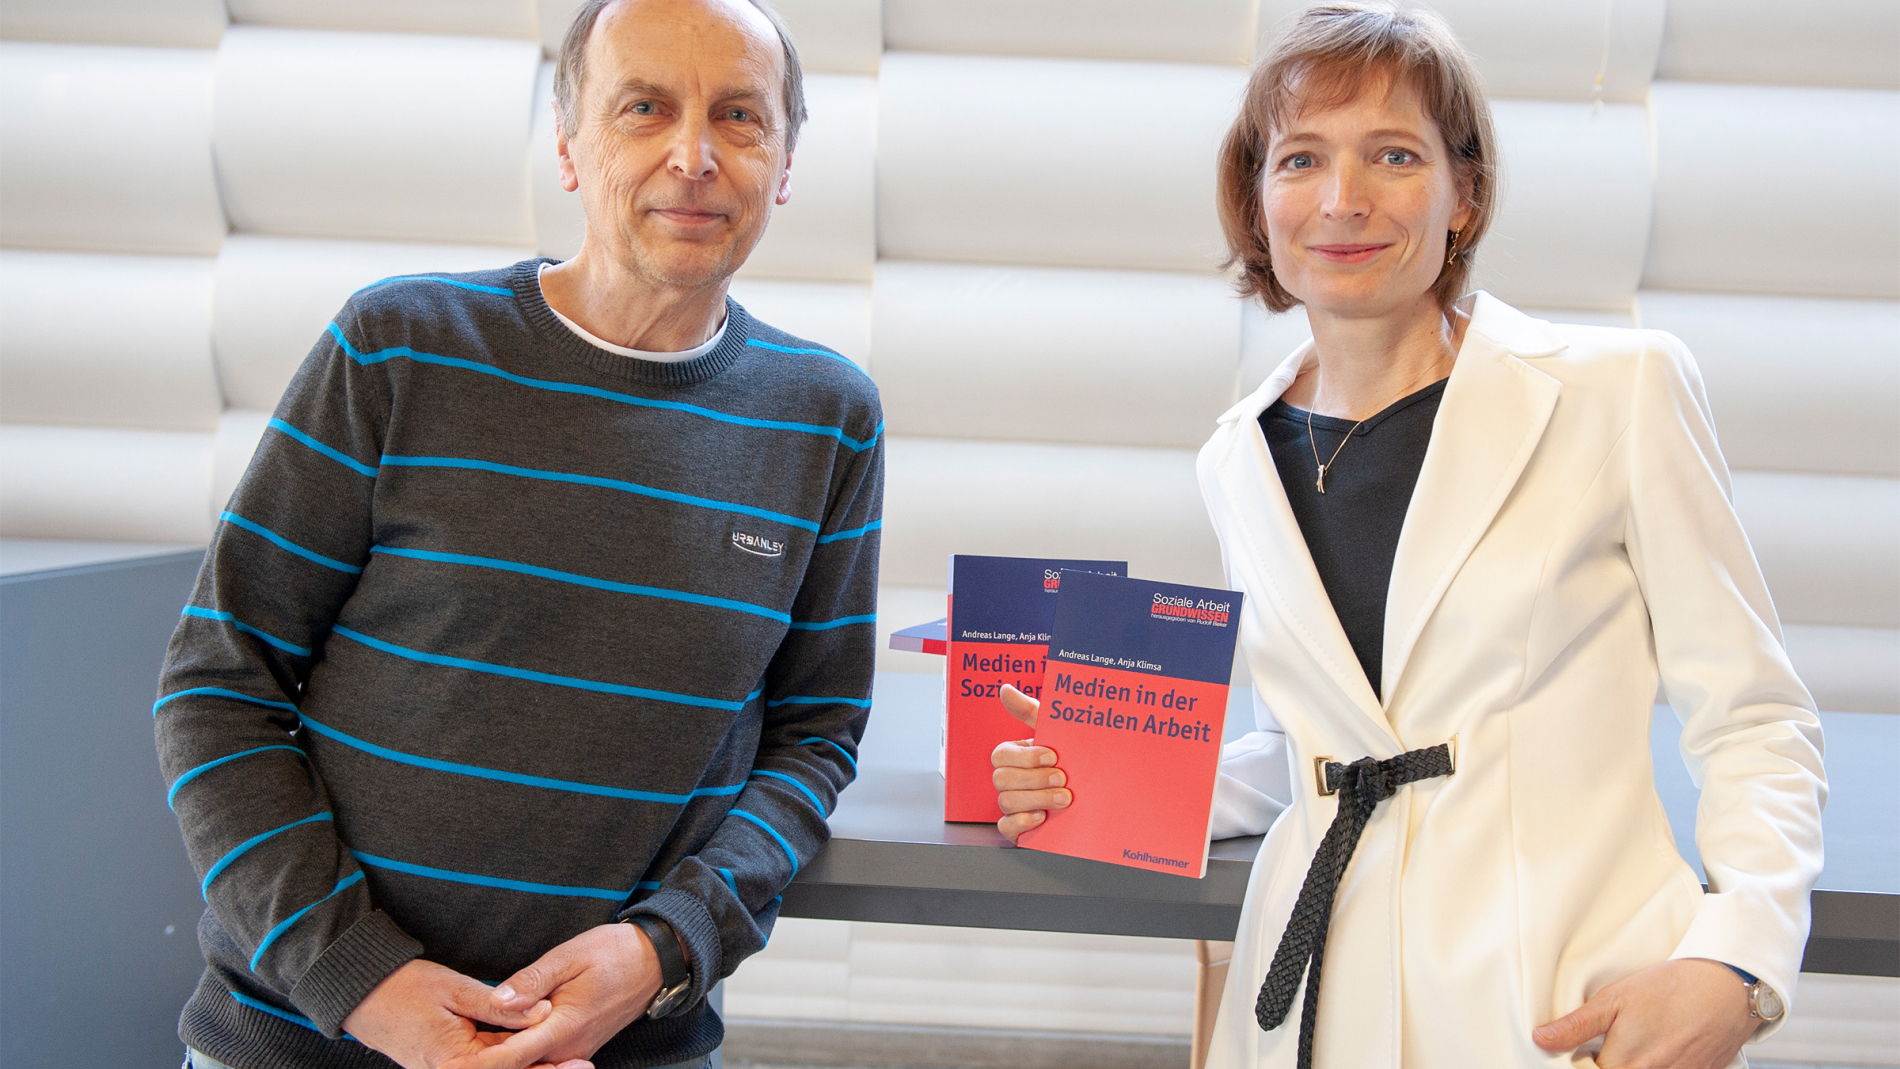 Professorin Dr. Anja Klimsa (links) und Professor Dr. Andreas Lange haben gemeinsam ein Lehrbuch mit dem Titel „Medien in der Sozialen Arbeit“ veröffentlicht.